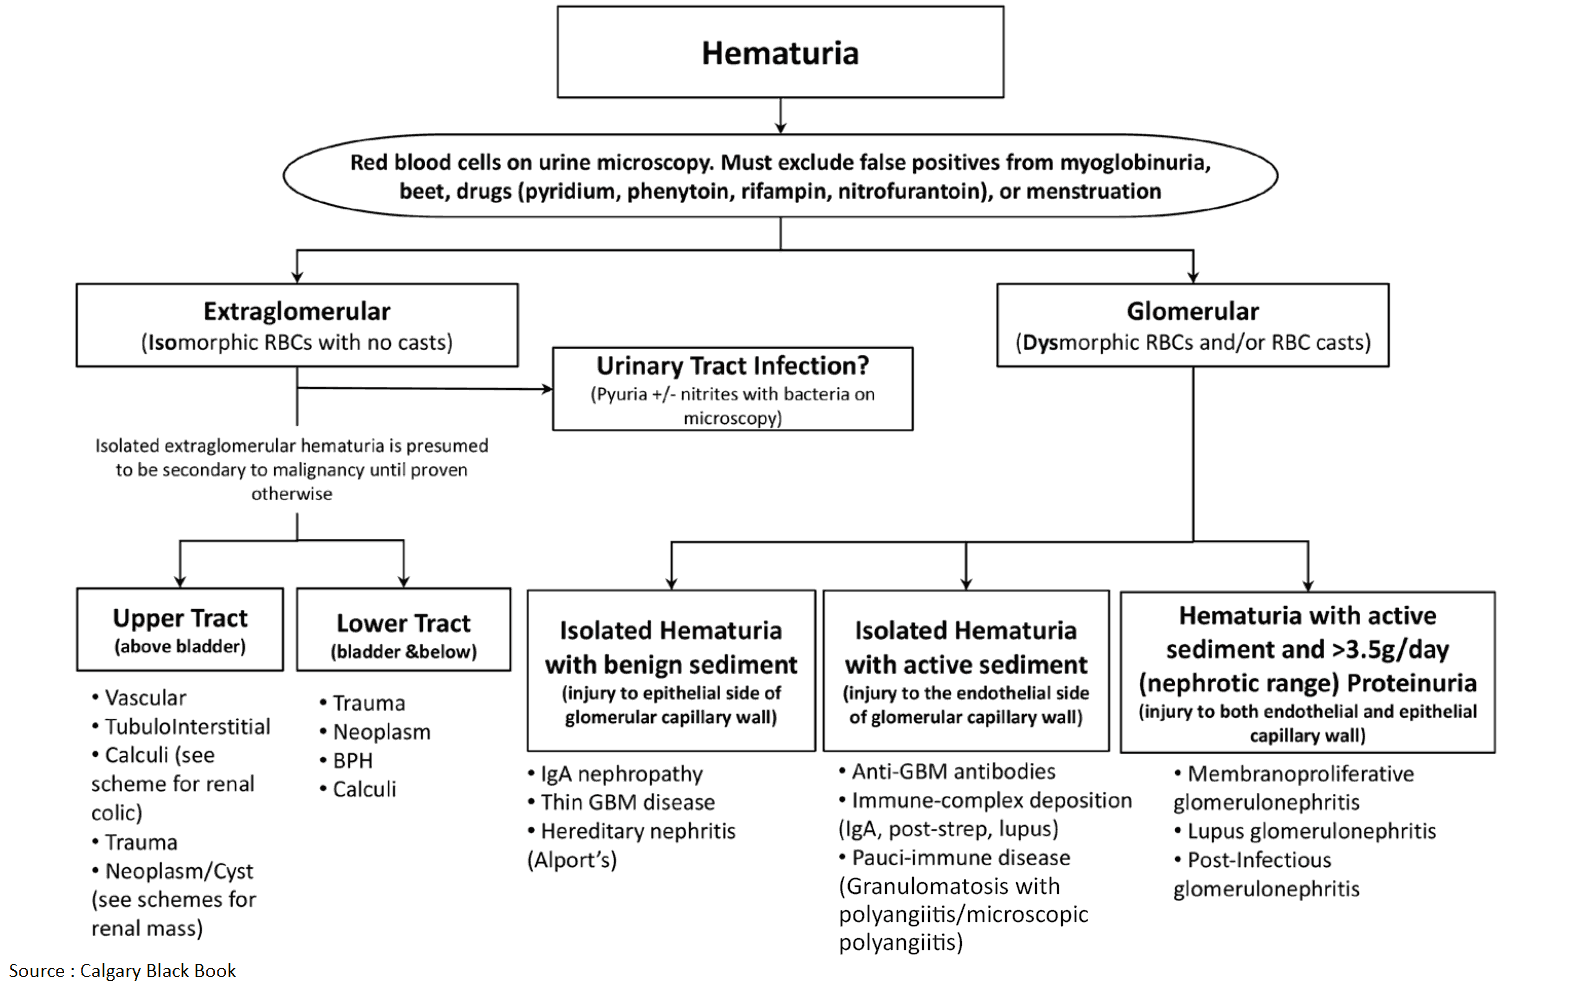 Hematuria - Differential Diagnosis